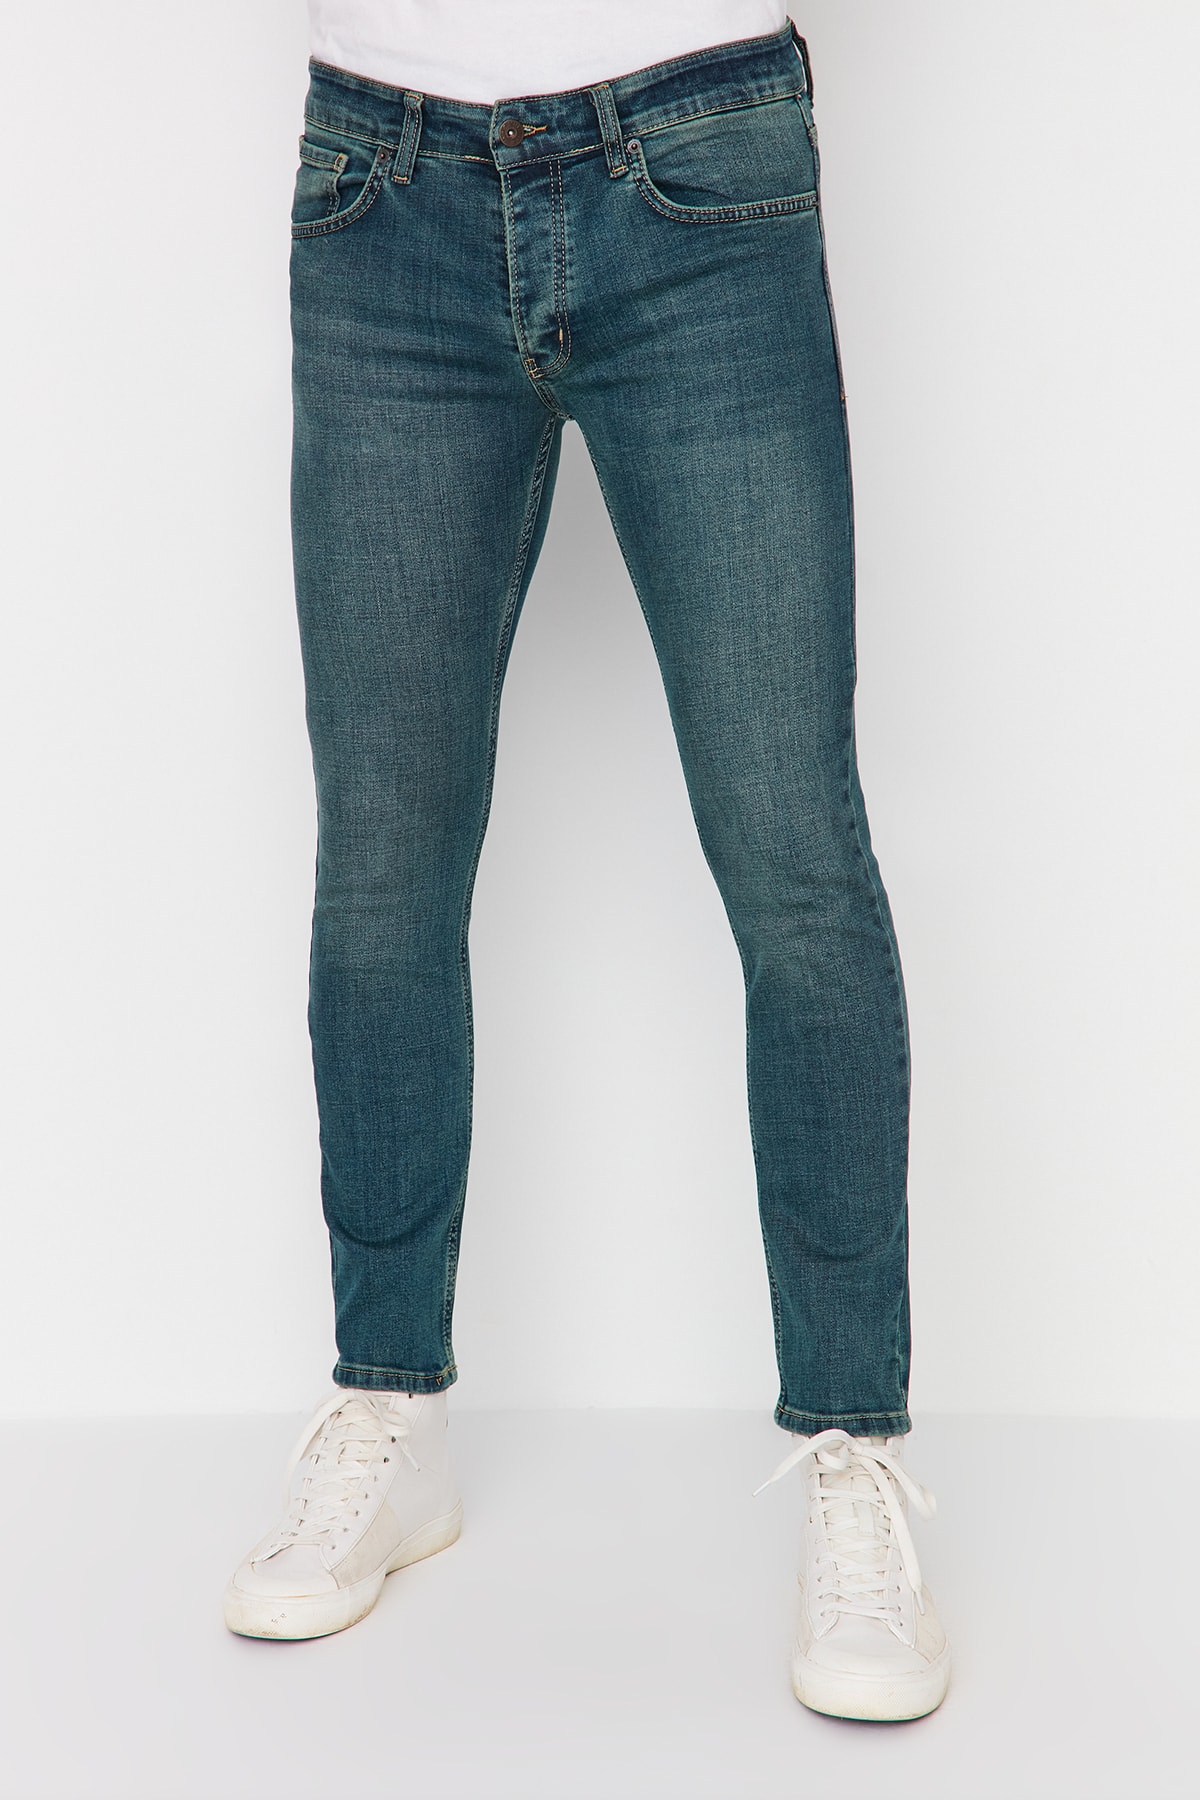 Джинсы Trendyol скинни, синий джинсы скинни размер 26 синий